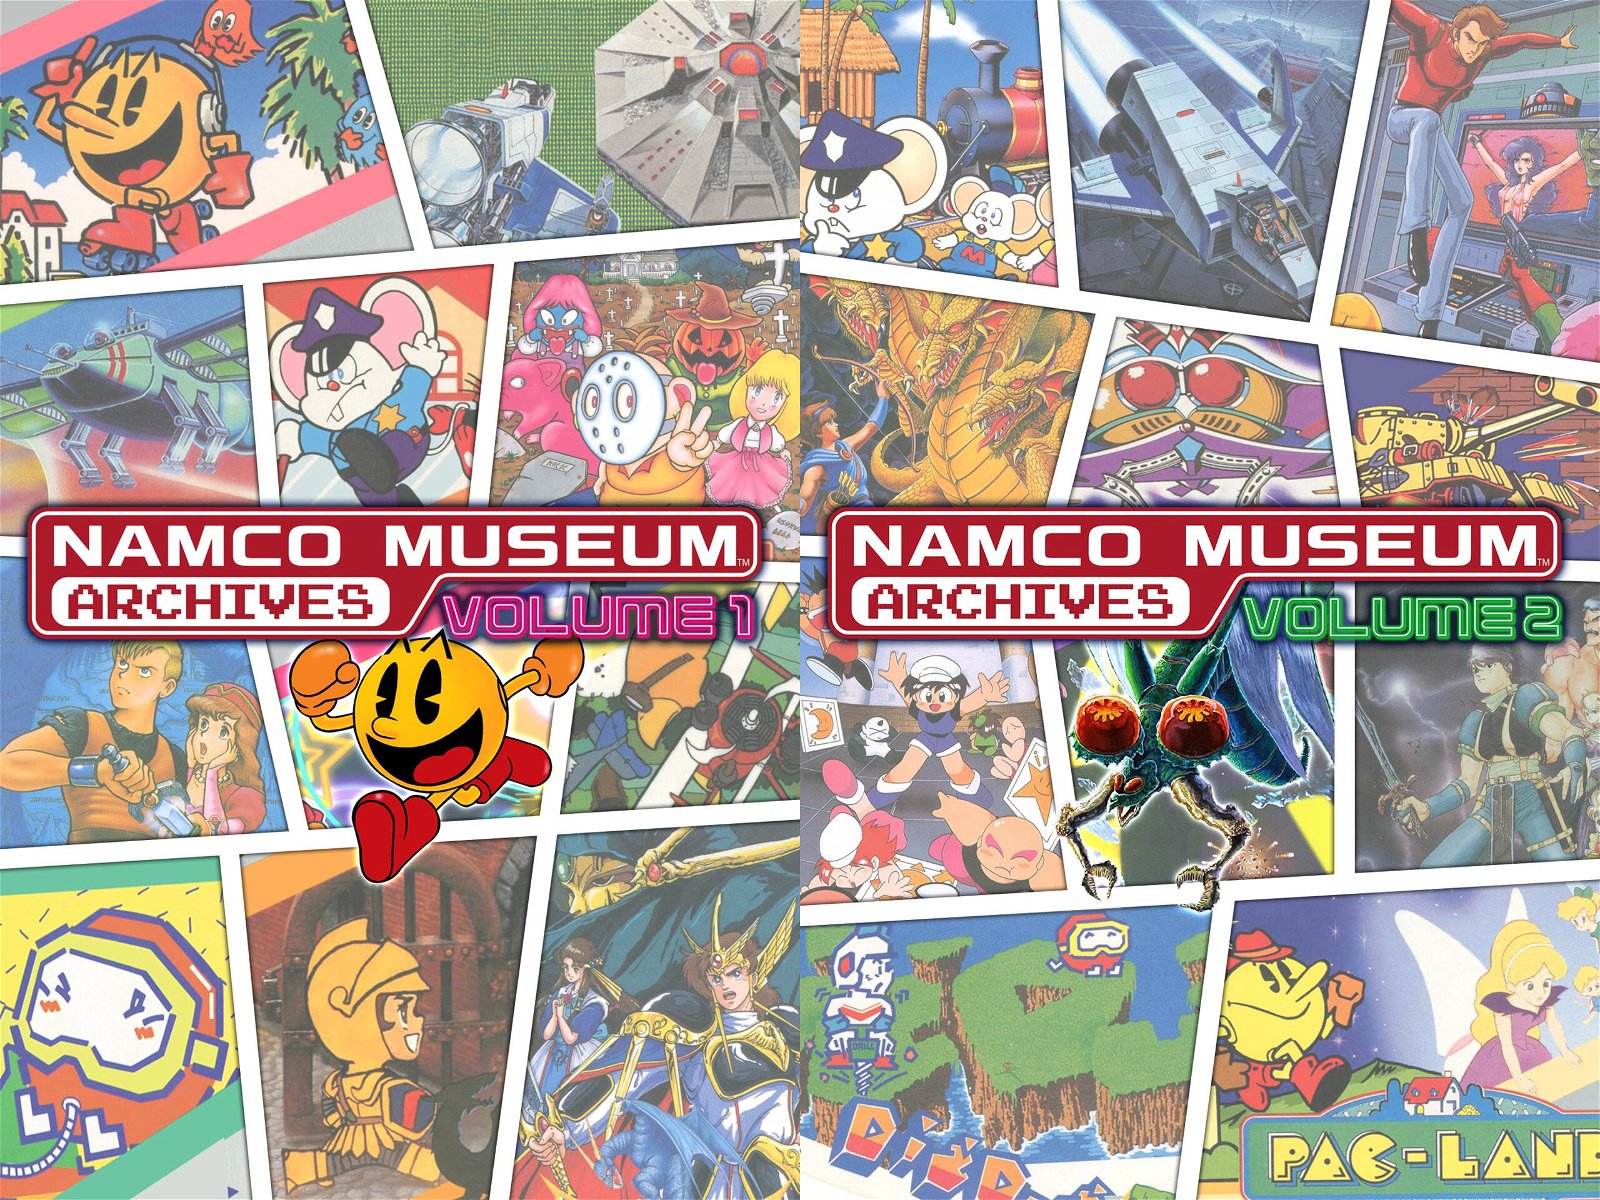 Namco Museum Archives Vol.1 e 2 anticipati dal Microsoft Store